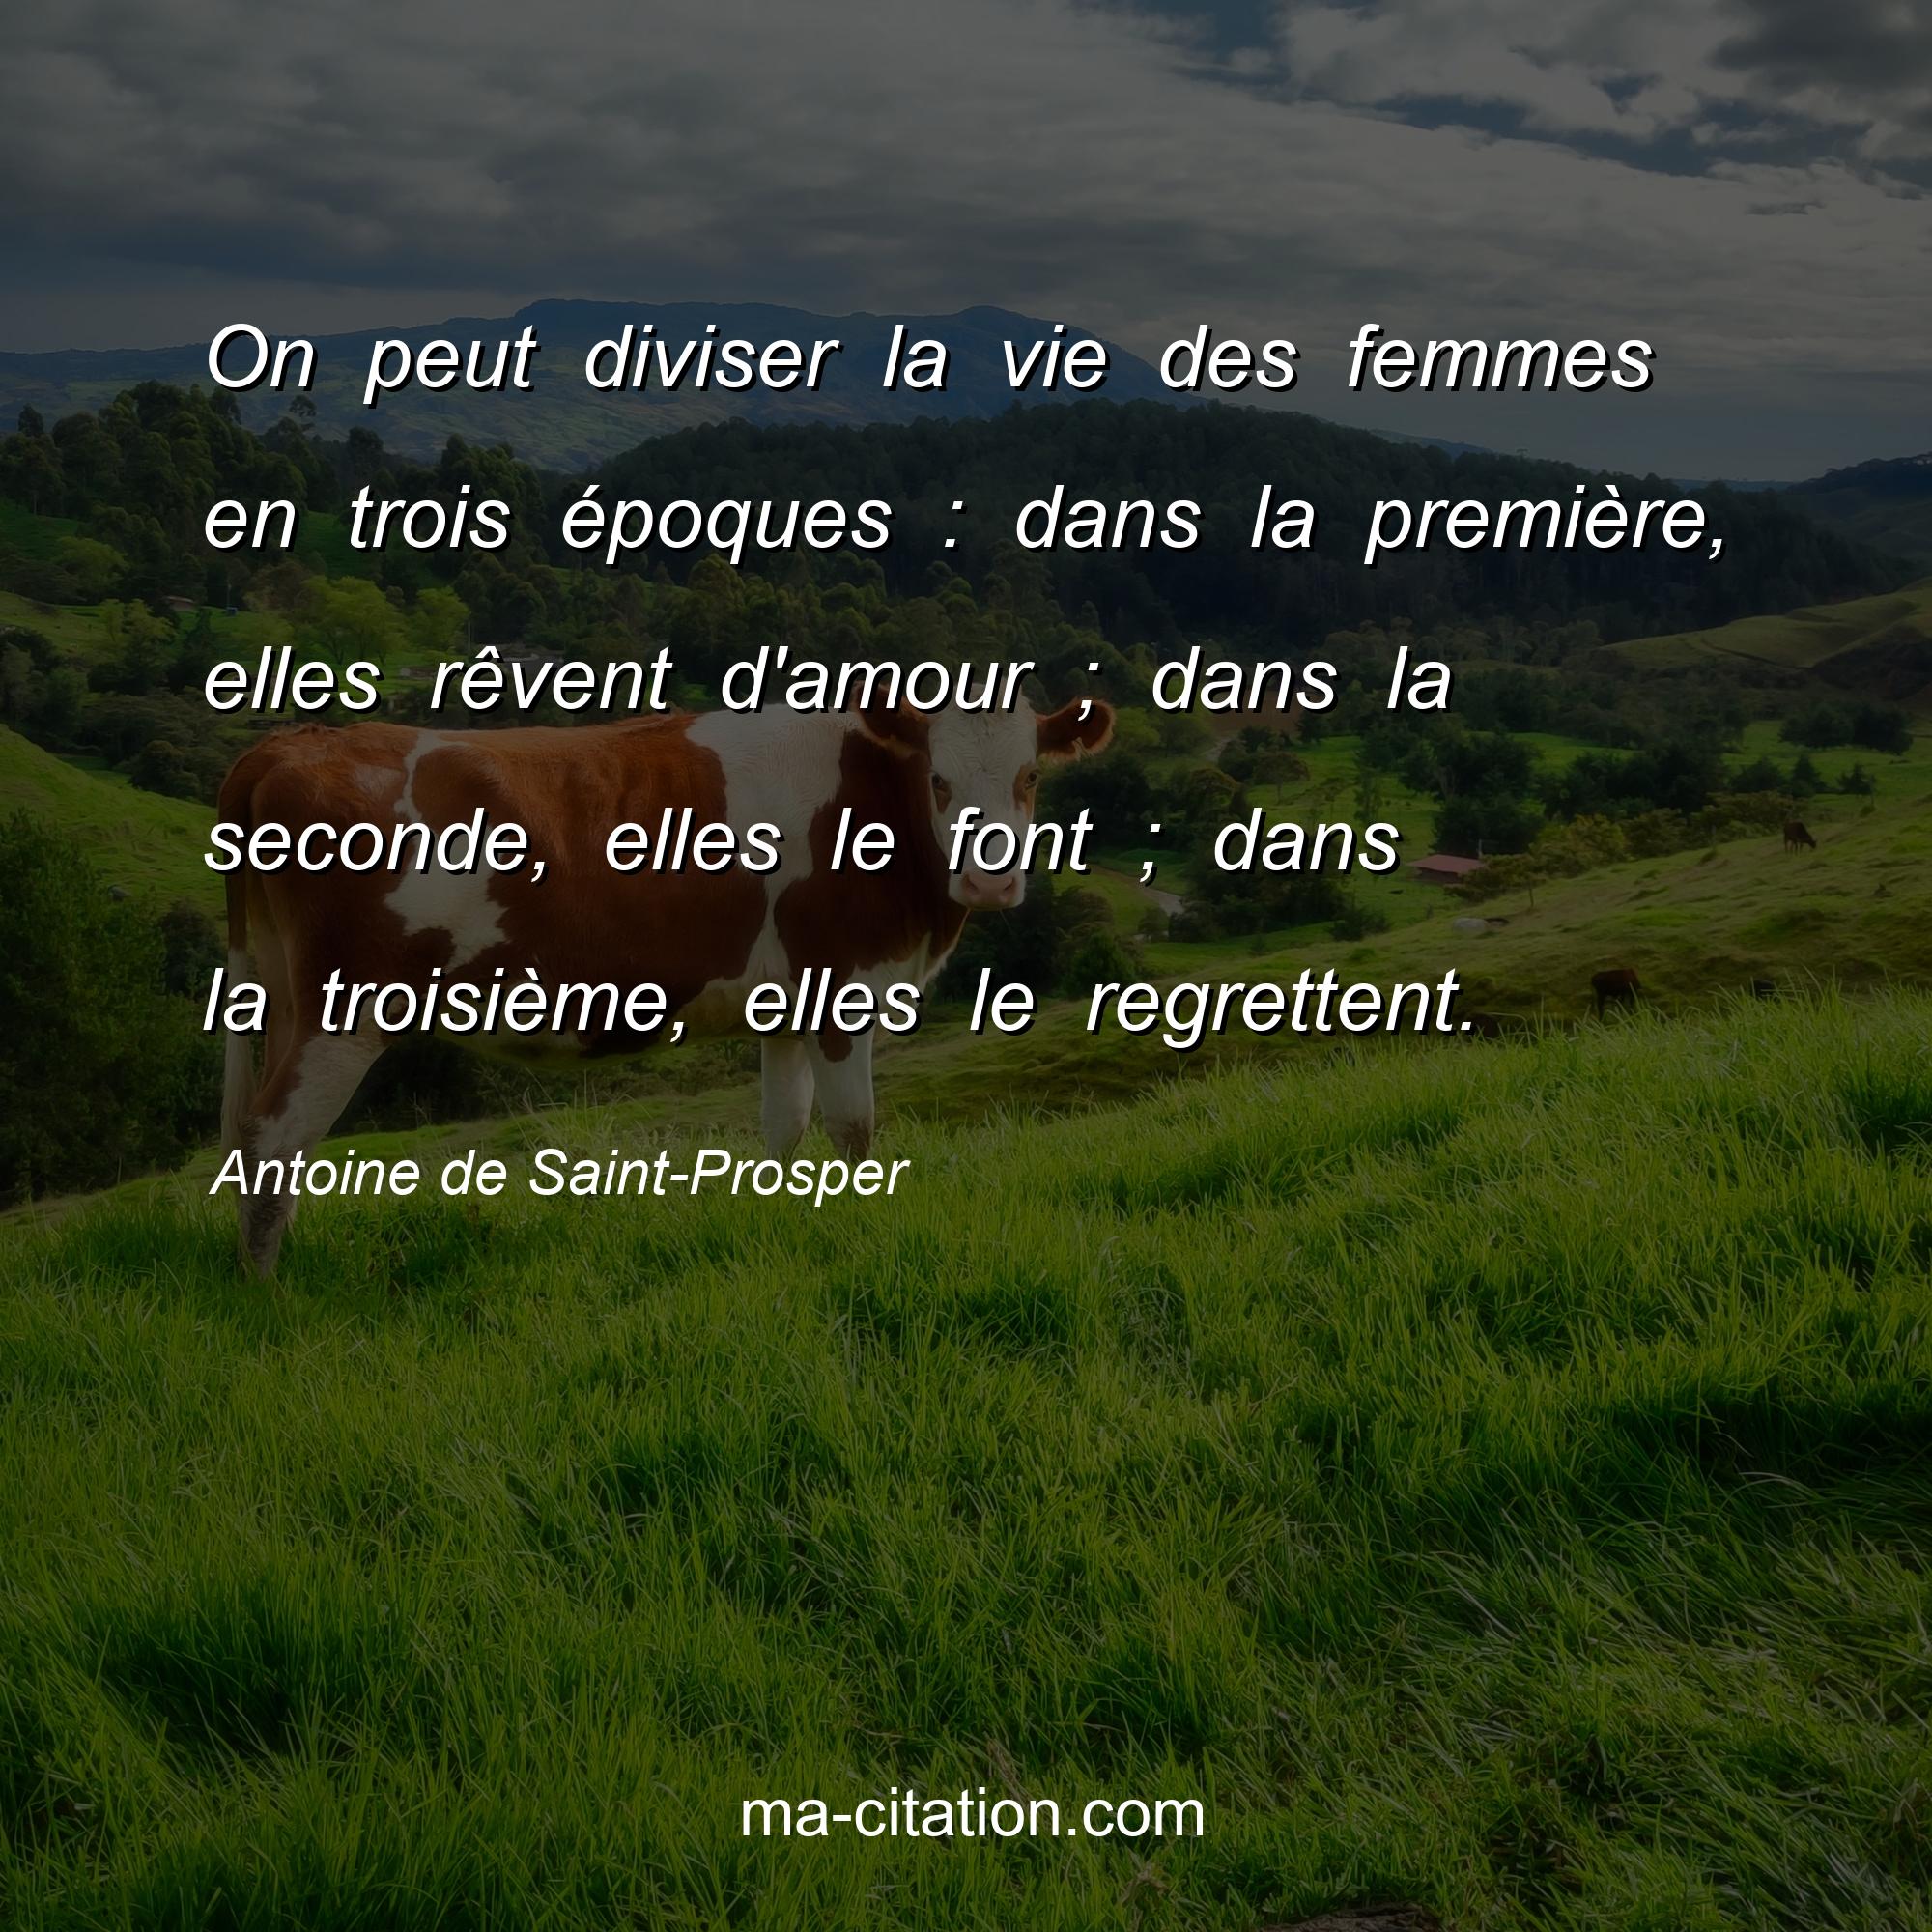 Antoine de Saint-Prosper : On peut diviser la vie des femmes en trois époques : dans la première, elles rêvent d'amour ; dans la seconde, elles le font ; dans la troisième, elles le regrettent.